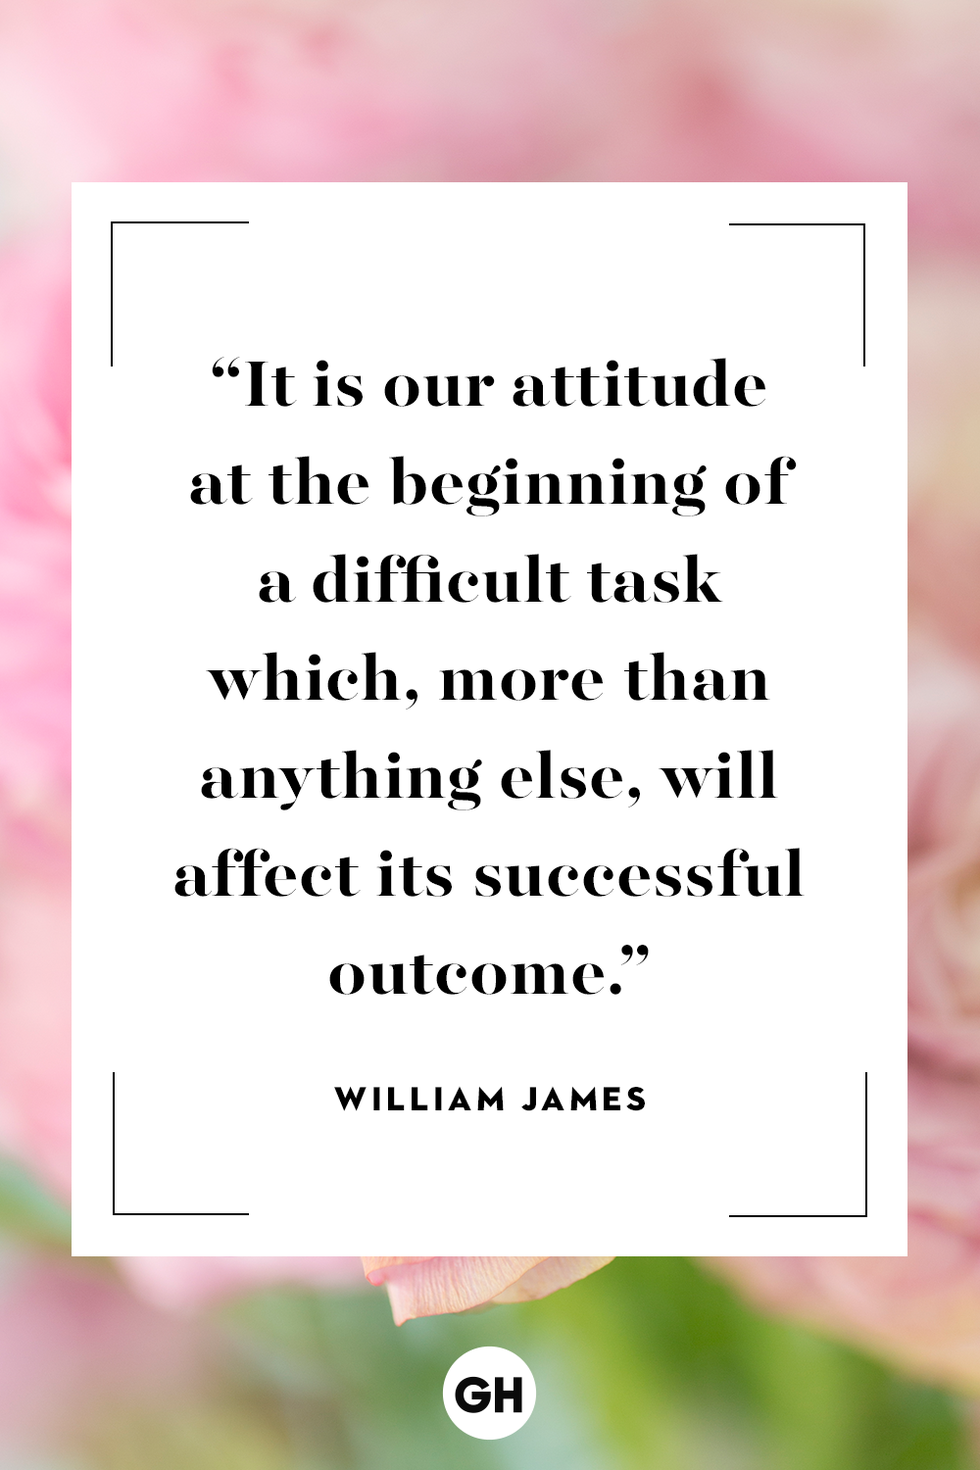 William James inspirational quote